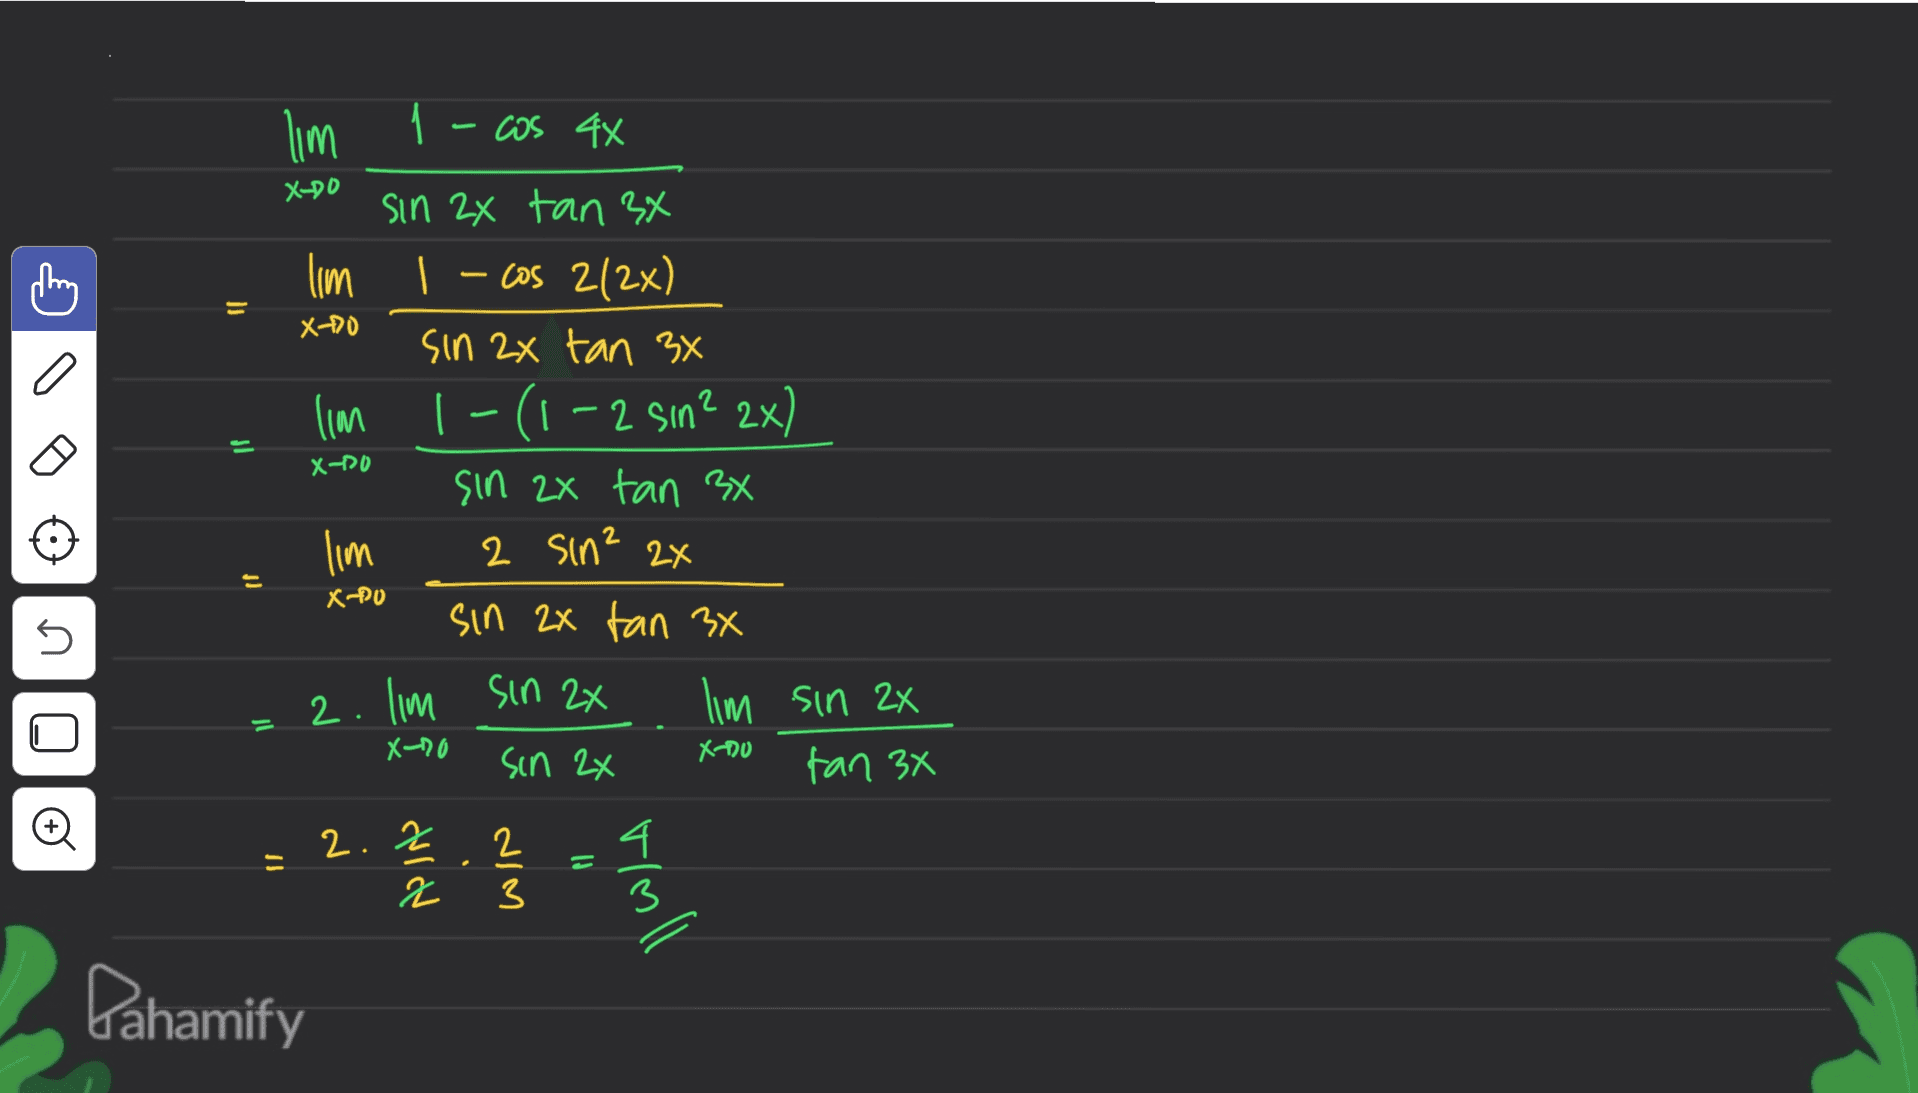 will 1 - cos 4x X-DO = X+0 Il X-PO sin 2x tan 34 lim | – cos 2(2x) sin 2x tan 3x lim 1-(1-2 sin? 2x) sin 2x tan 3x 2 sin? 2x sin 2x tan 3x lim sin 2x X-20 sin 2x tan 3x will = x-Po n 2. lim sin 2x . Xno Olo 4 = 2.2 2 NIM = Moll Pahamify 